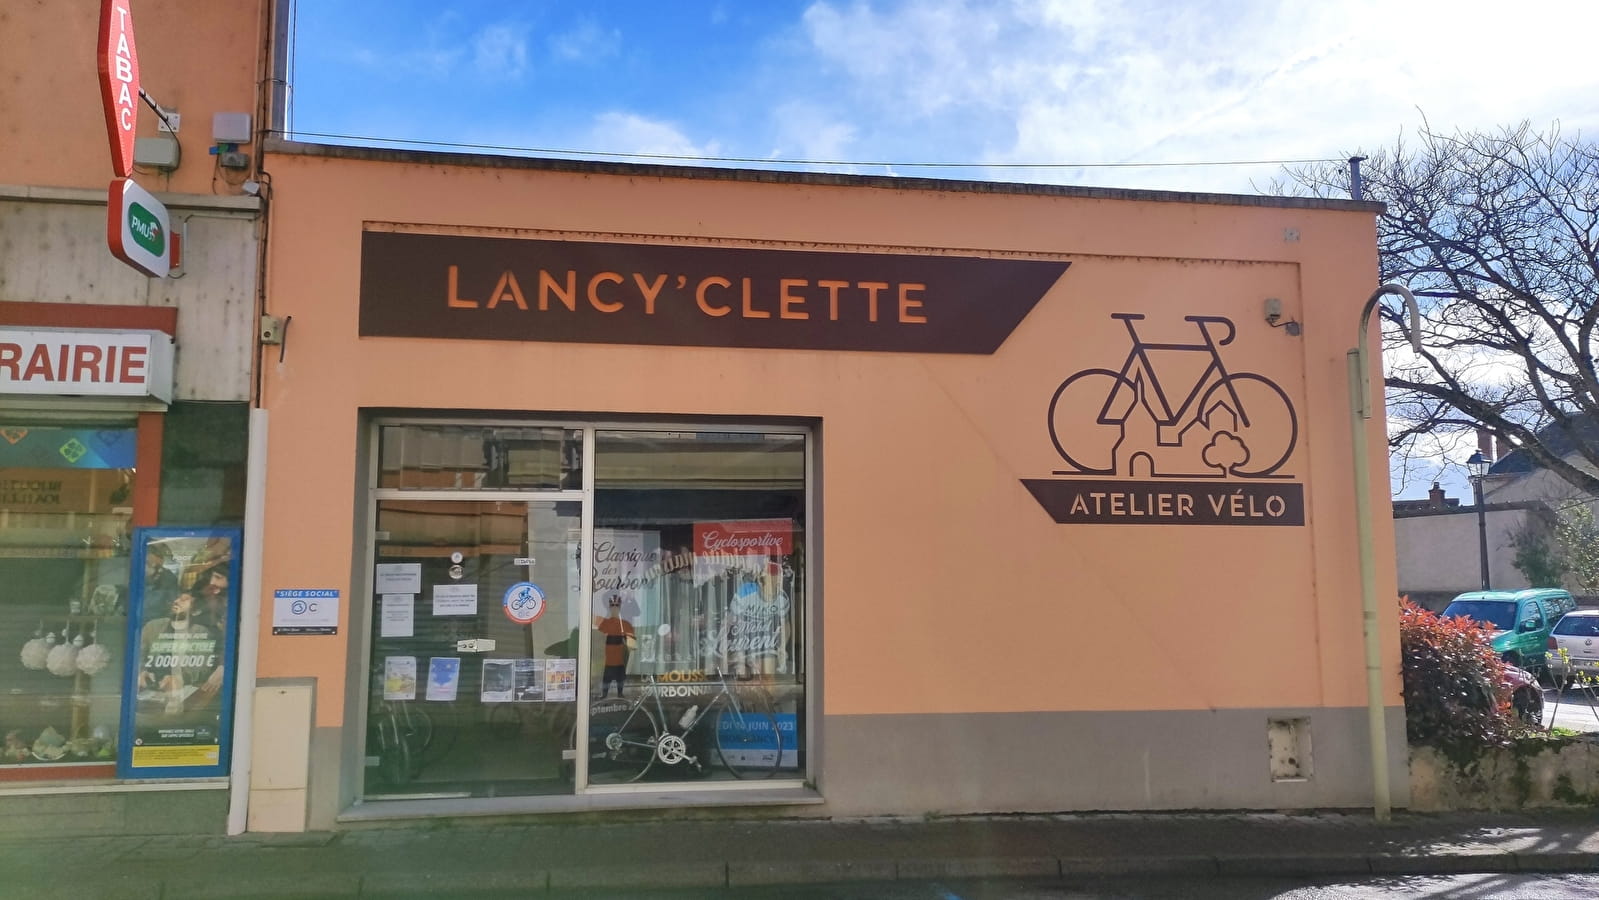 Lancy' Clette